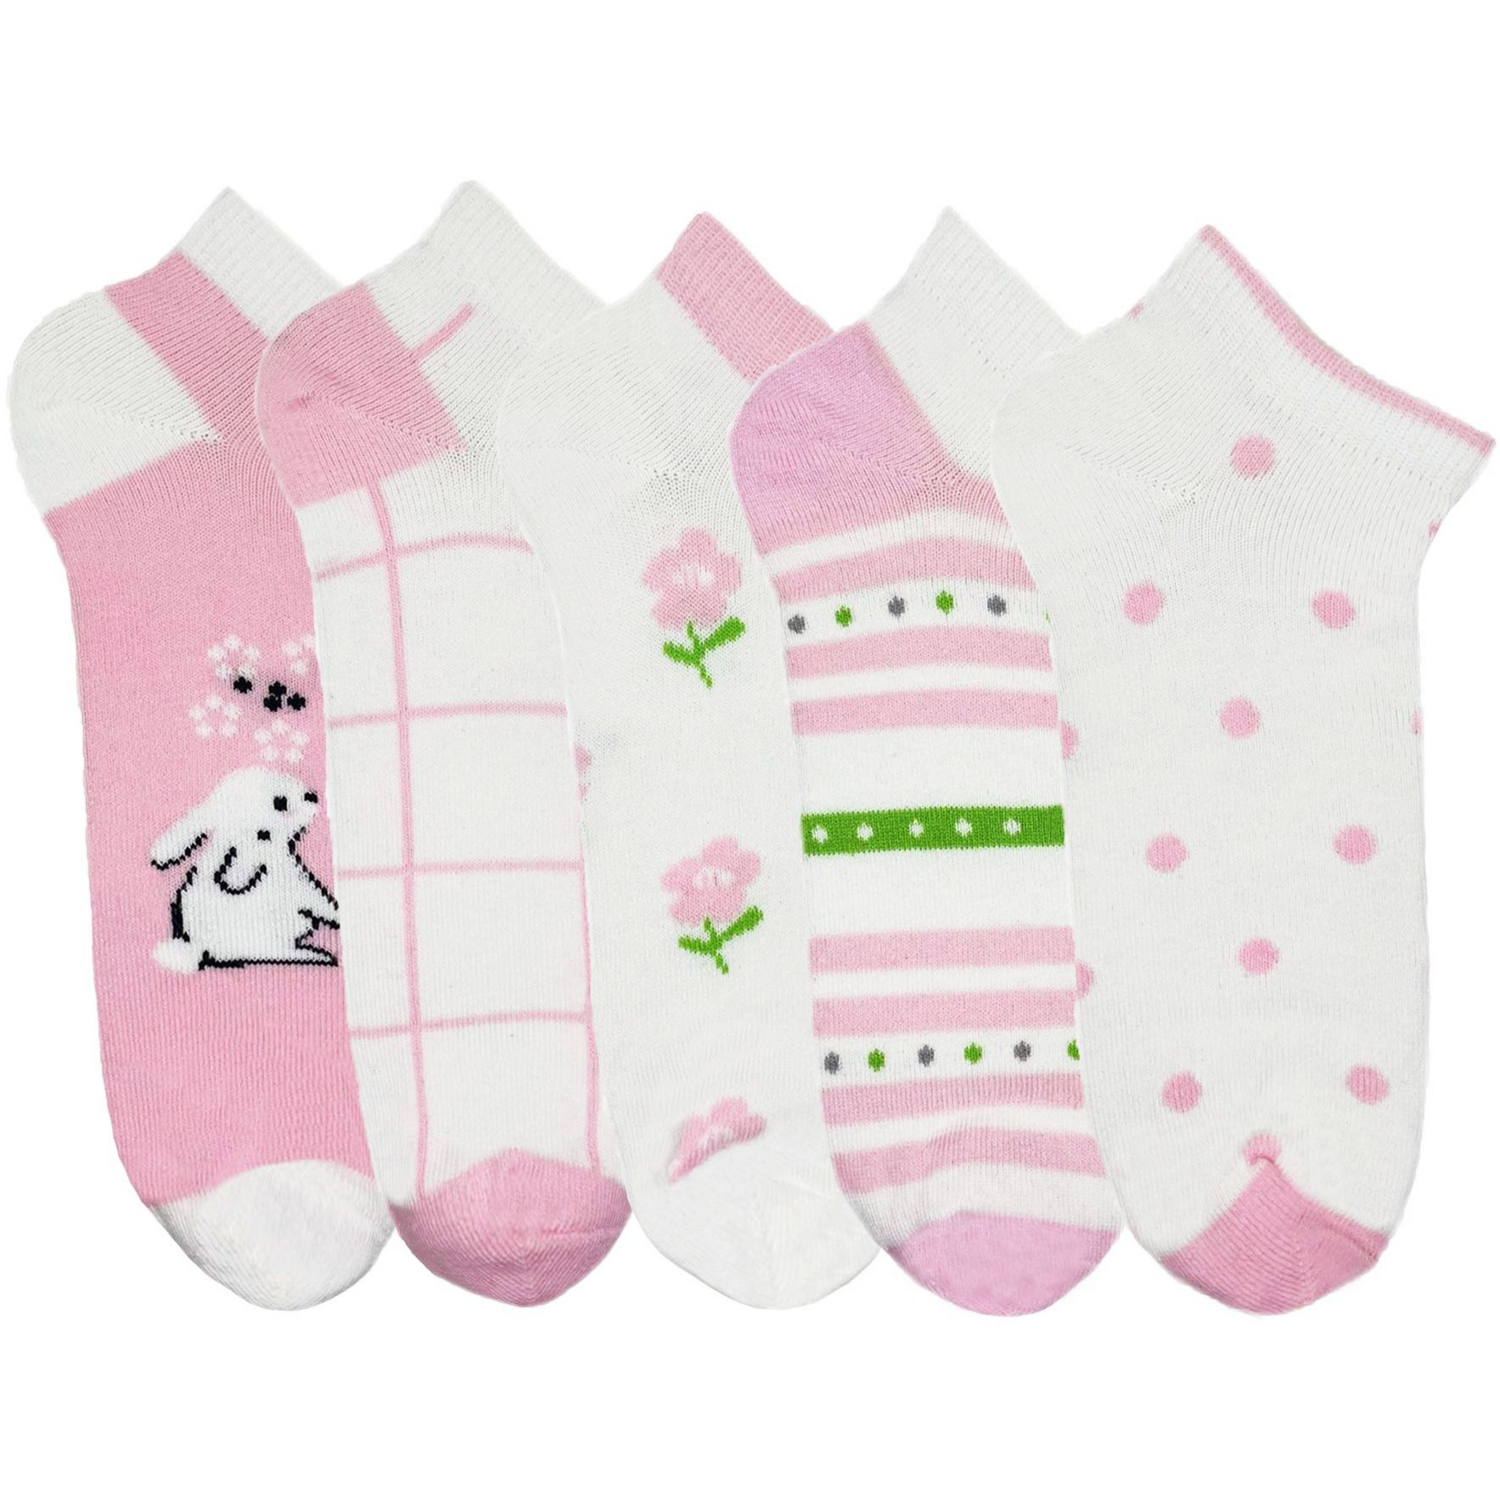 Набор носков для девочек Premier Socks 18-20 5 пар розовые с принтом (4820163319711) фото 